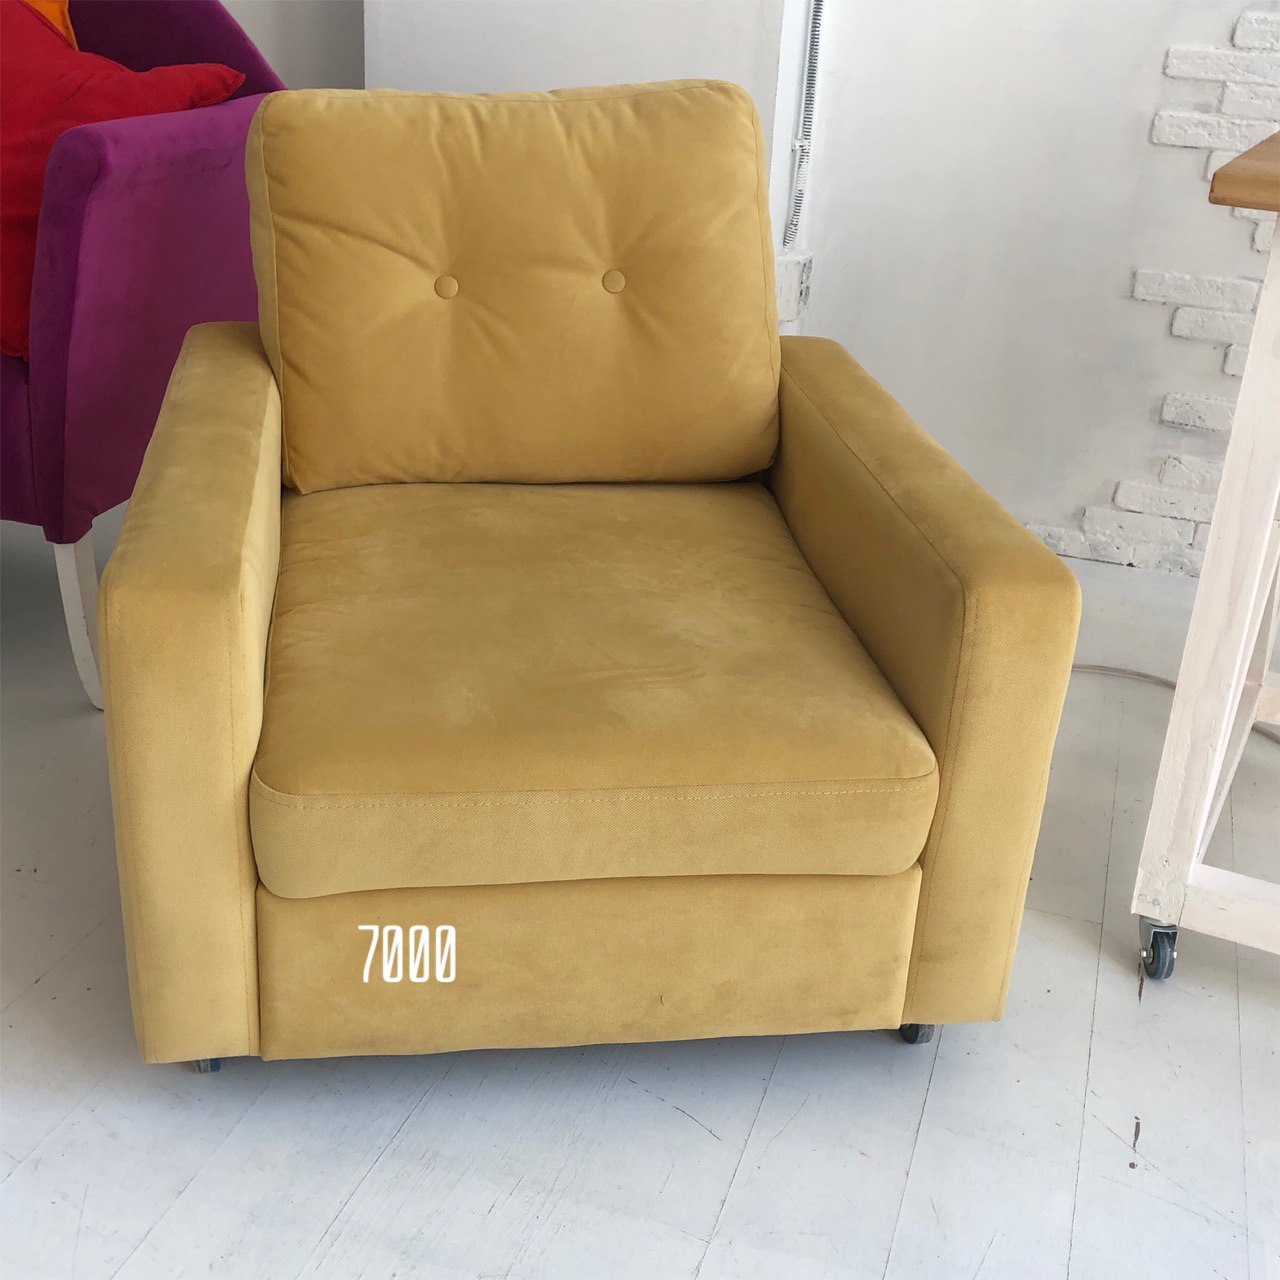 Кресло кровать кресло желтое с пуфиком для ног 73х85х105 см